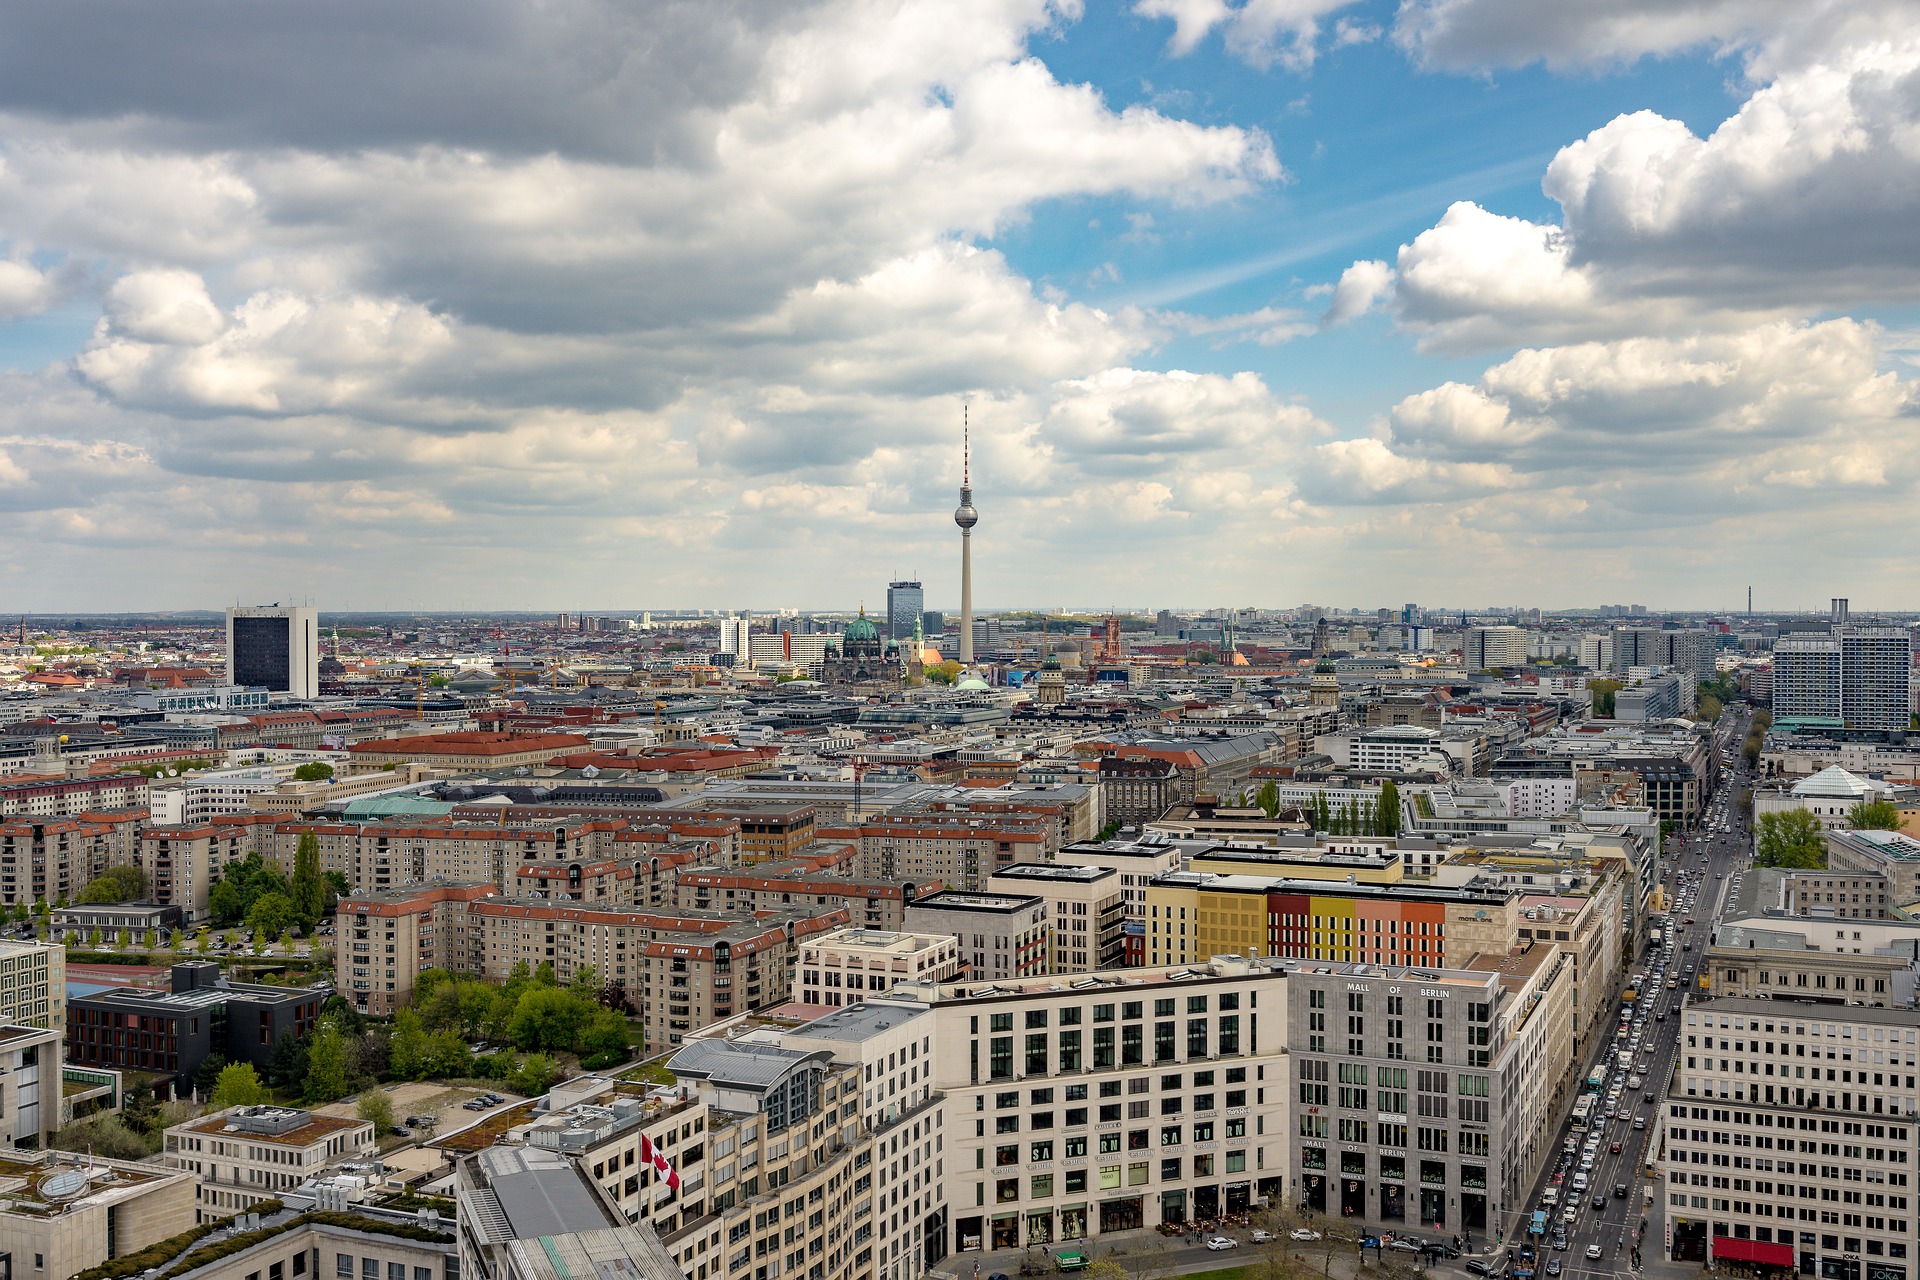 Utsikt över Berlin med tv-tornet i centrum